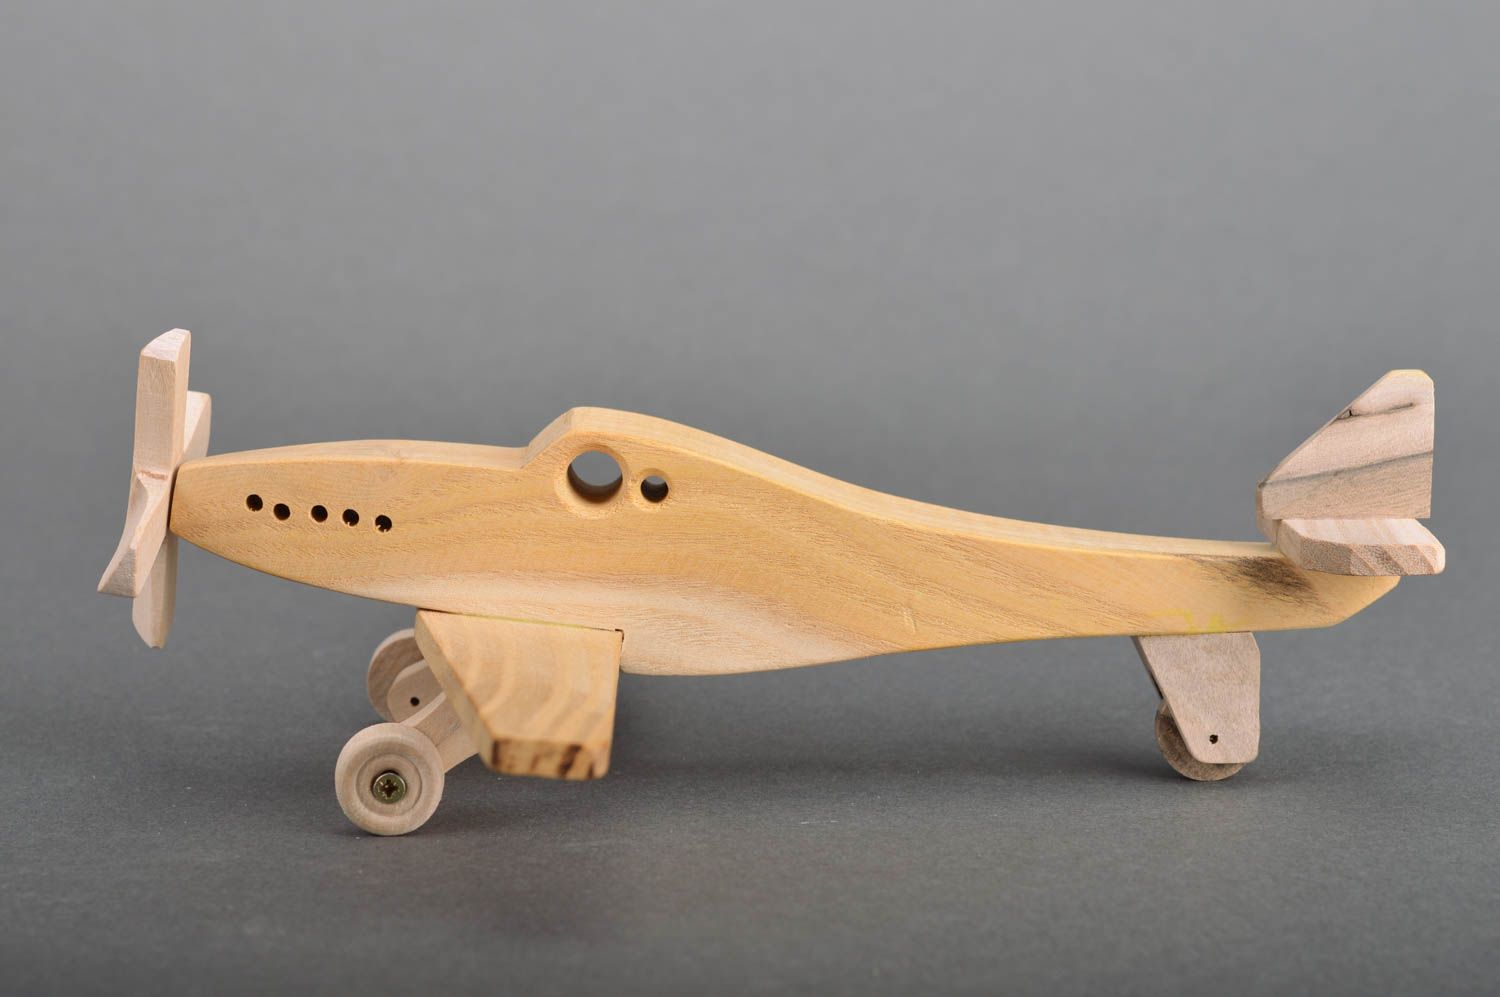 Avion Jouet en bois 9 pièces pour enfants à partir de 3 ans